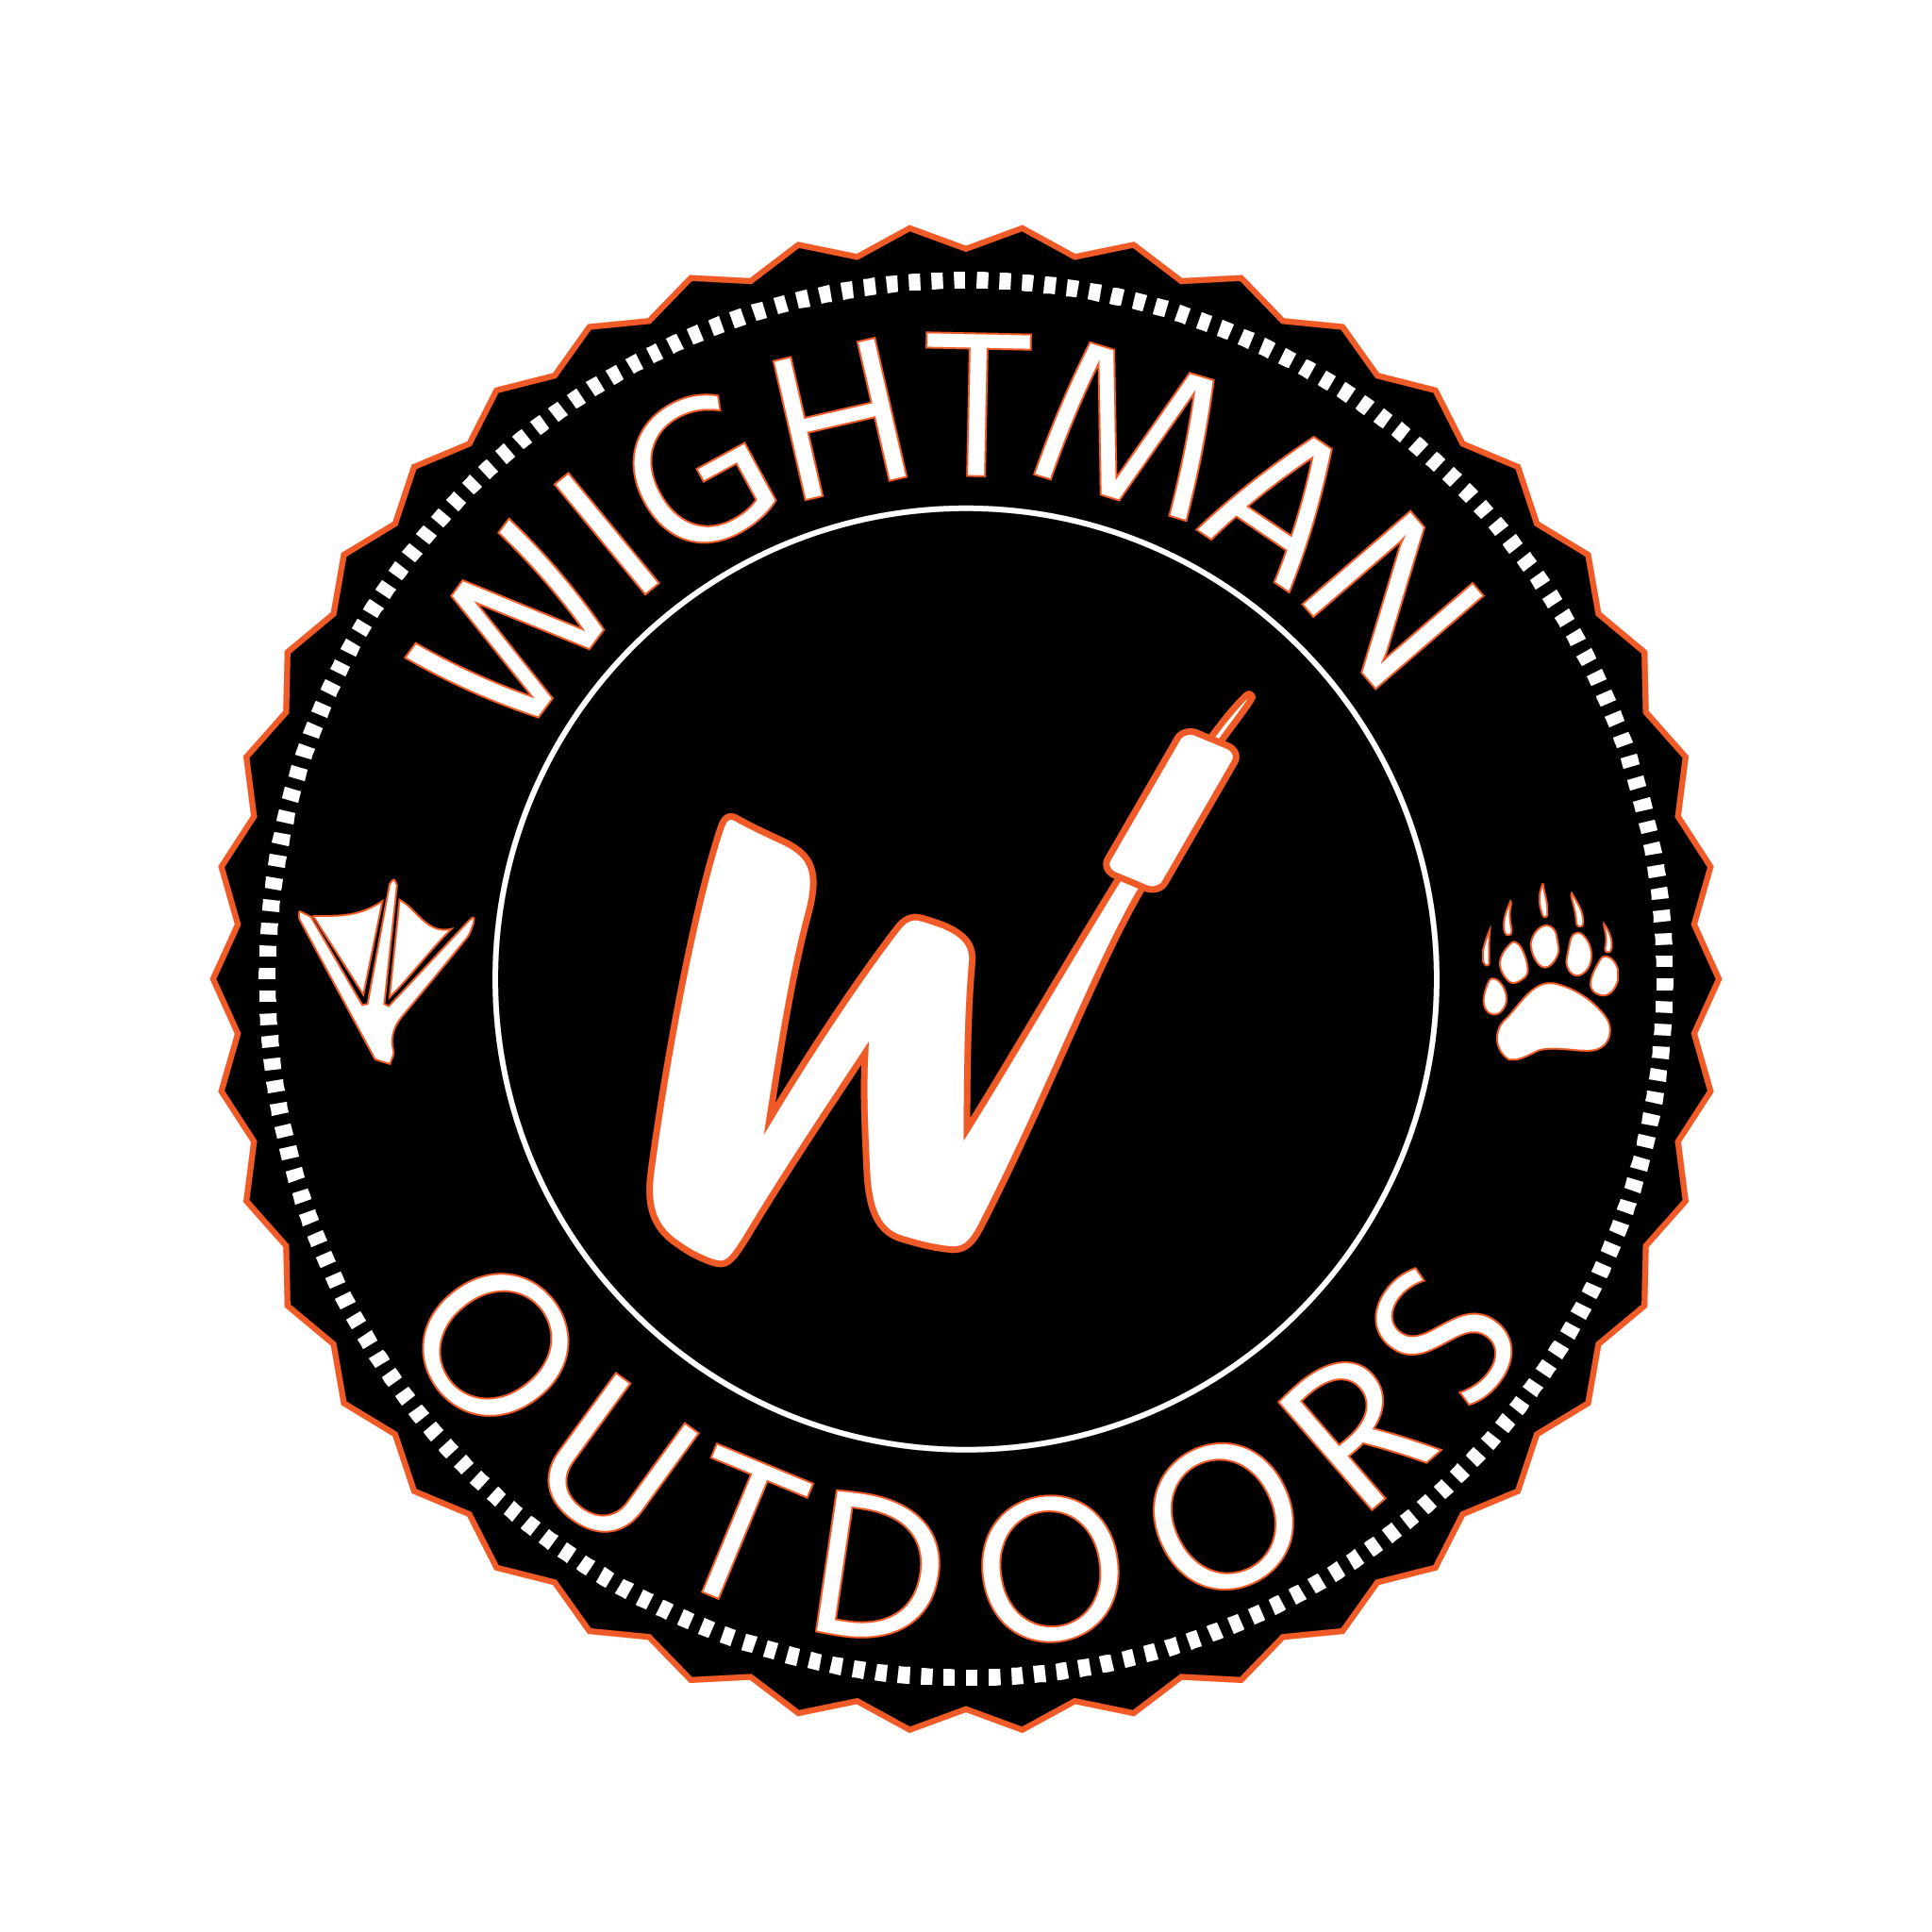 Wightman Outdoors